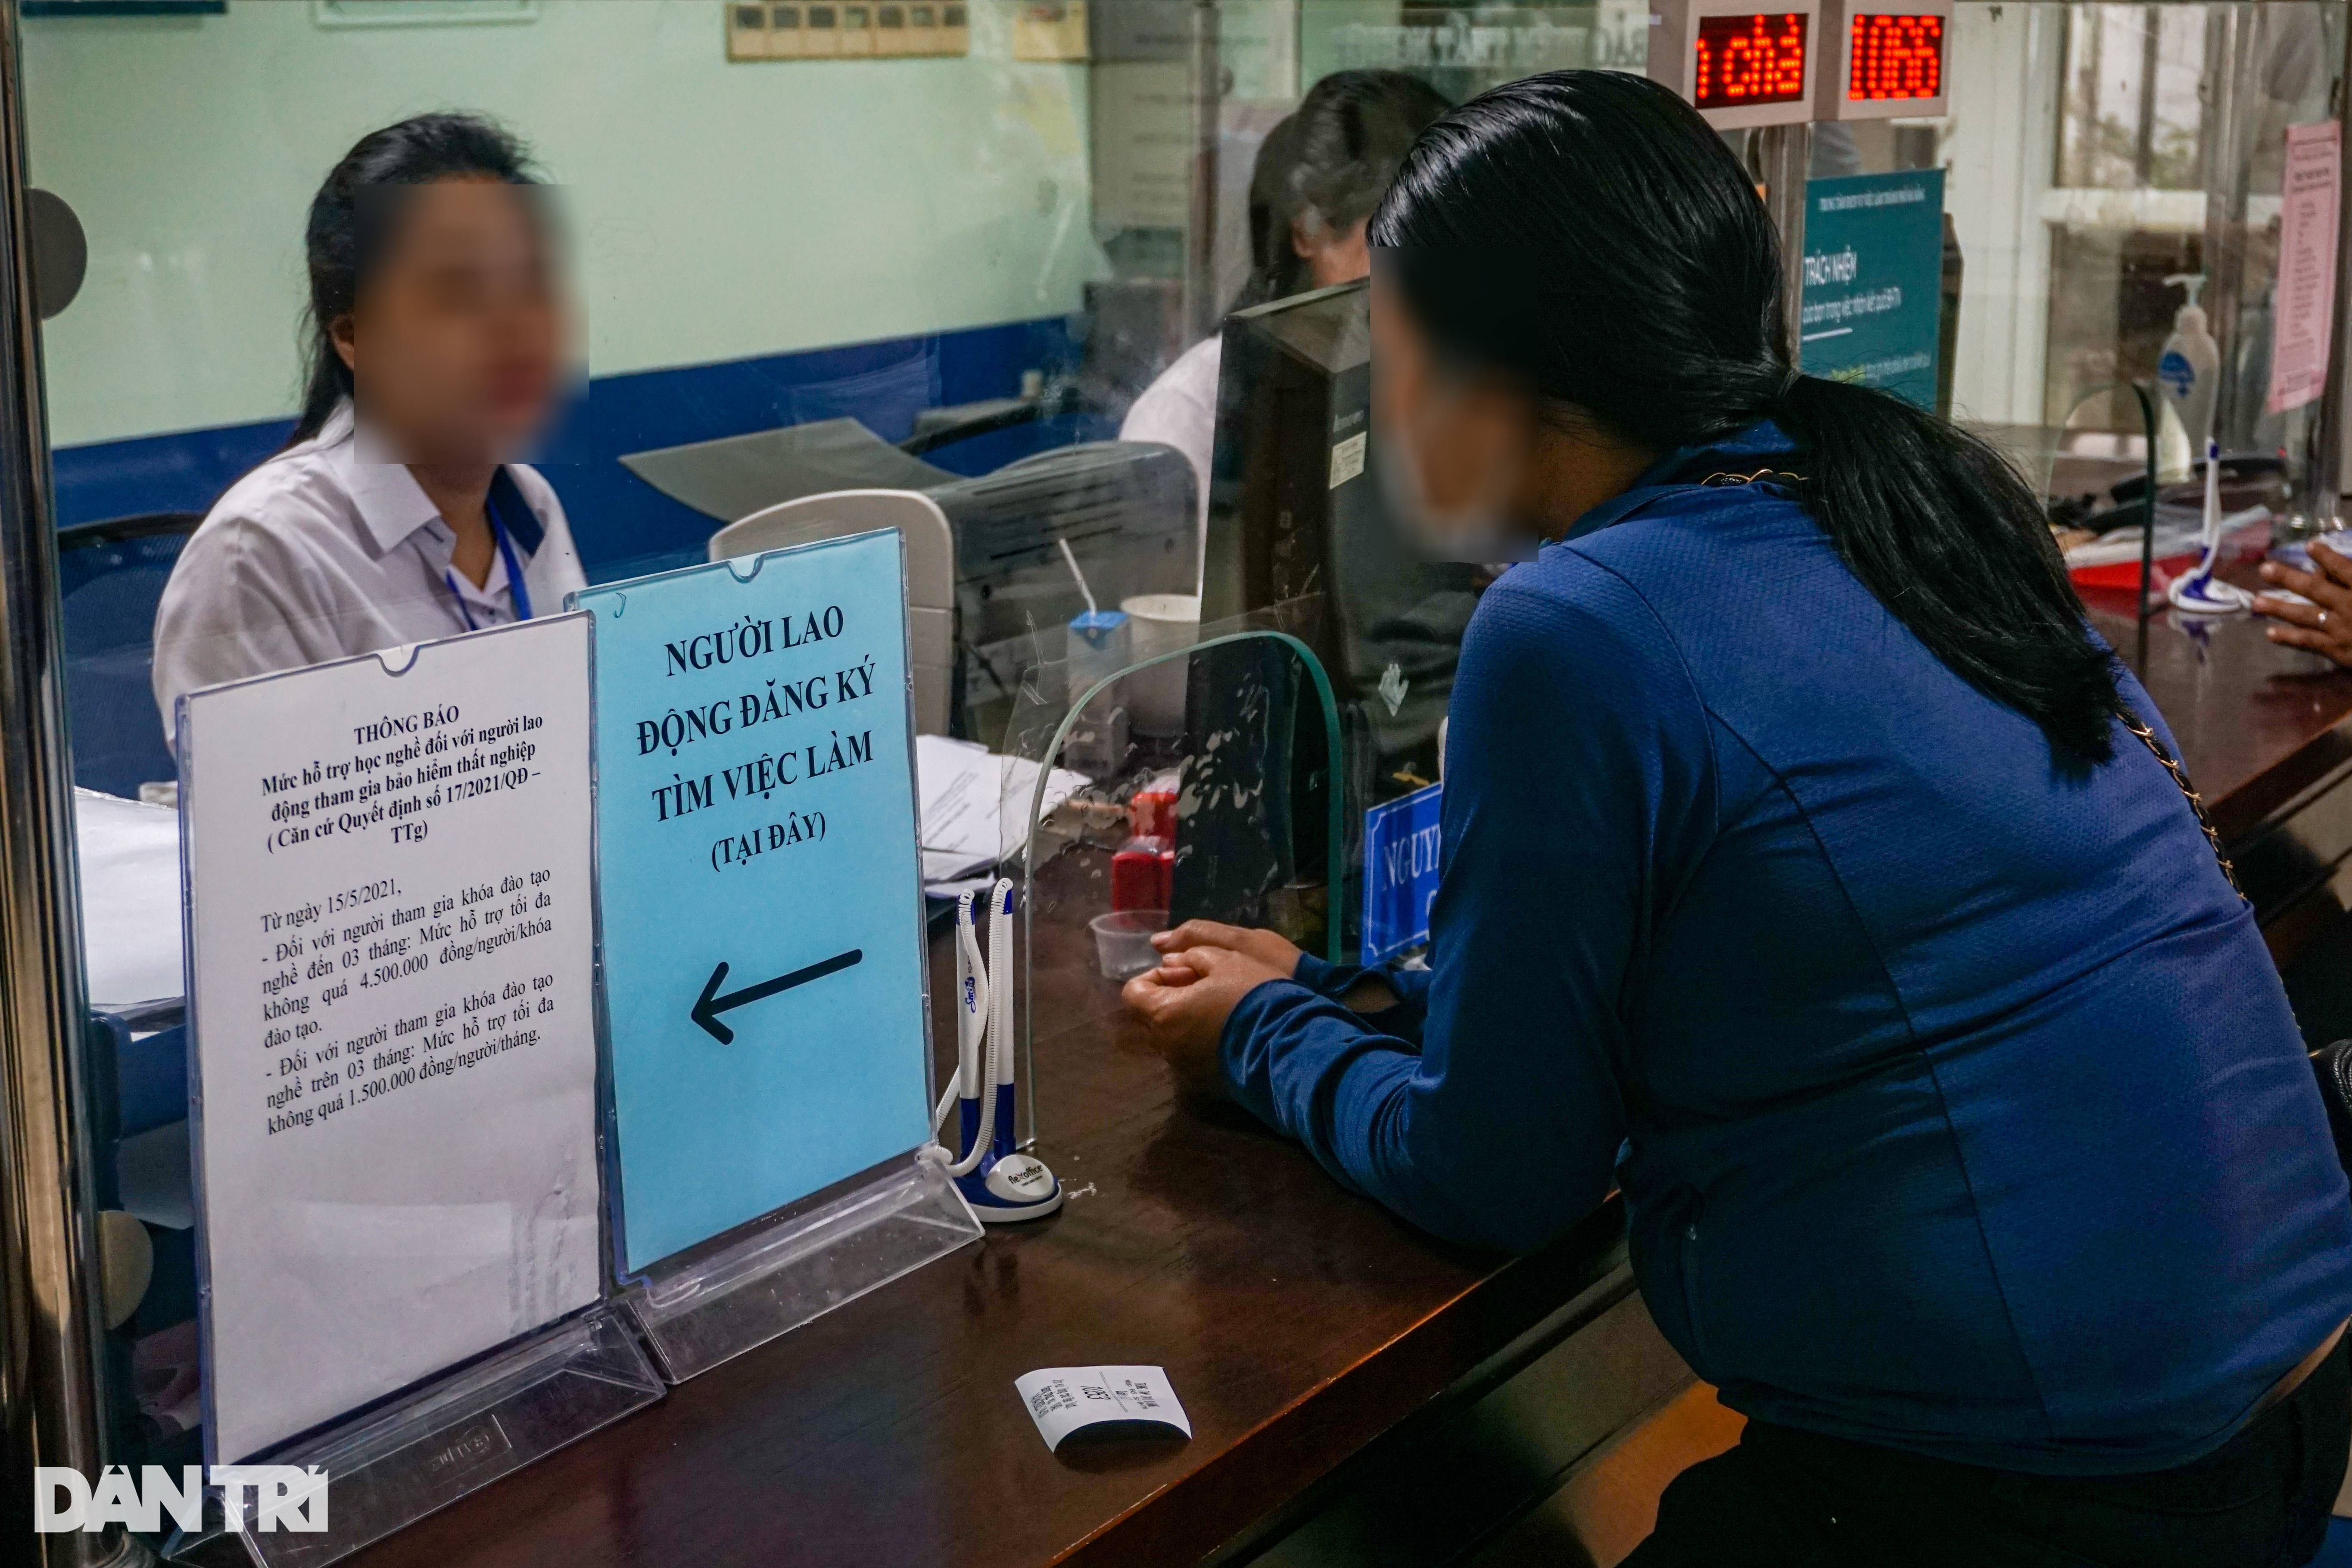 Đà Nẵng đề xuất hỗ trợ 2 triệu đồng cho gái mại dâm hoàn lương học nghề - 1